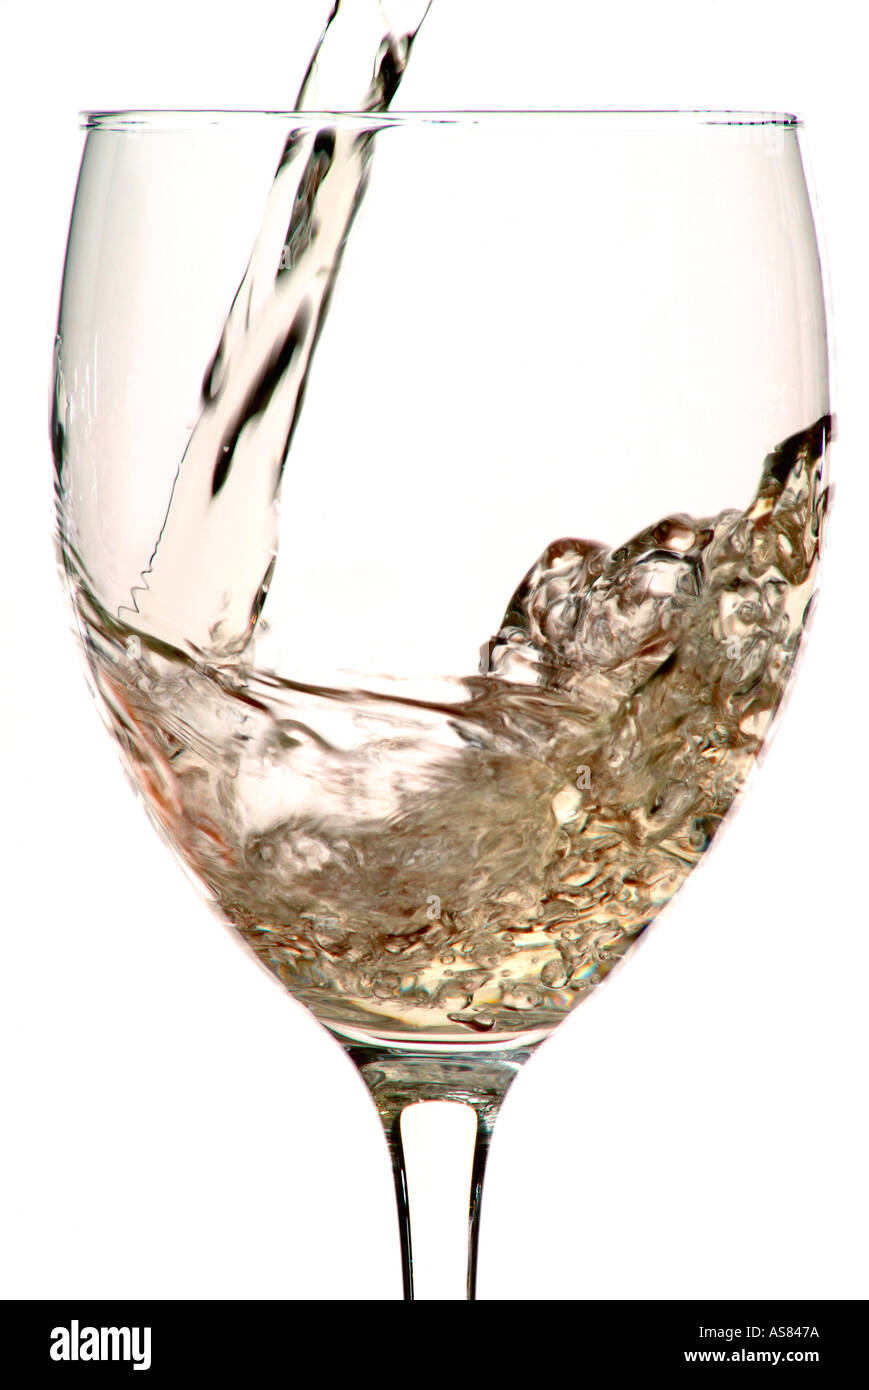 Le vin blanc et verser dans le verre de vin Banque D'Images